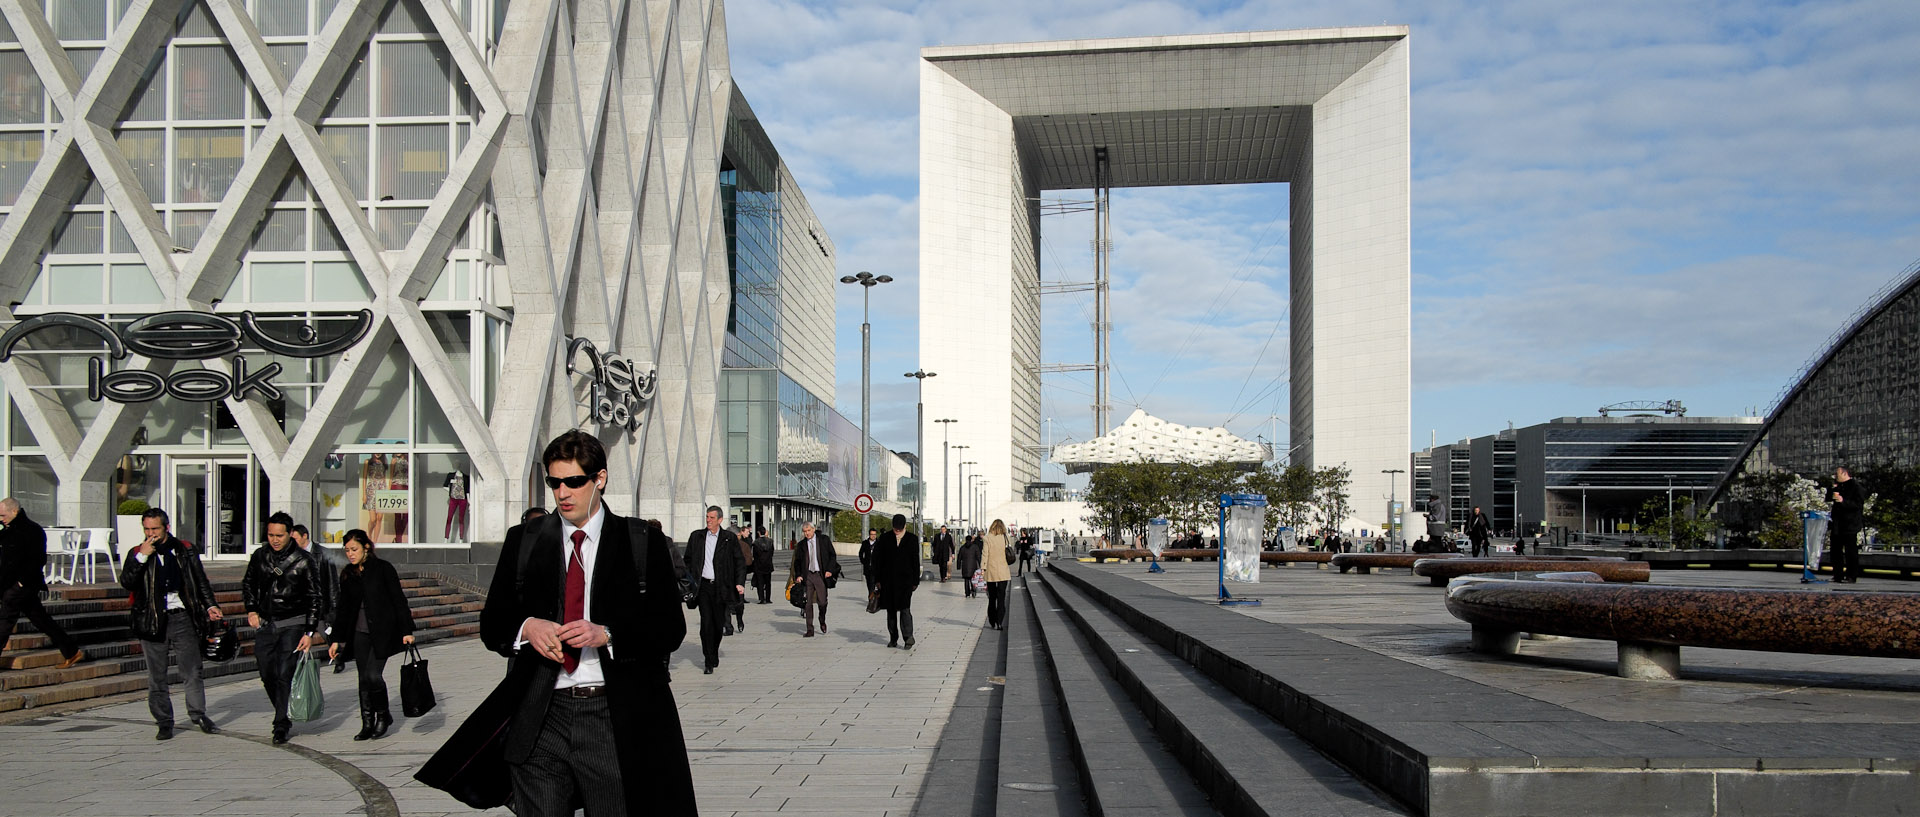 Passants, esplanade de La Défense, à Paris.